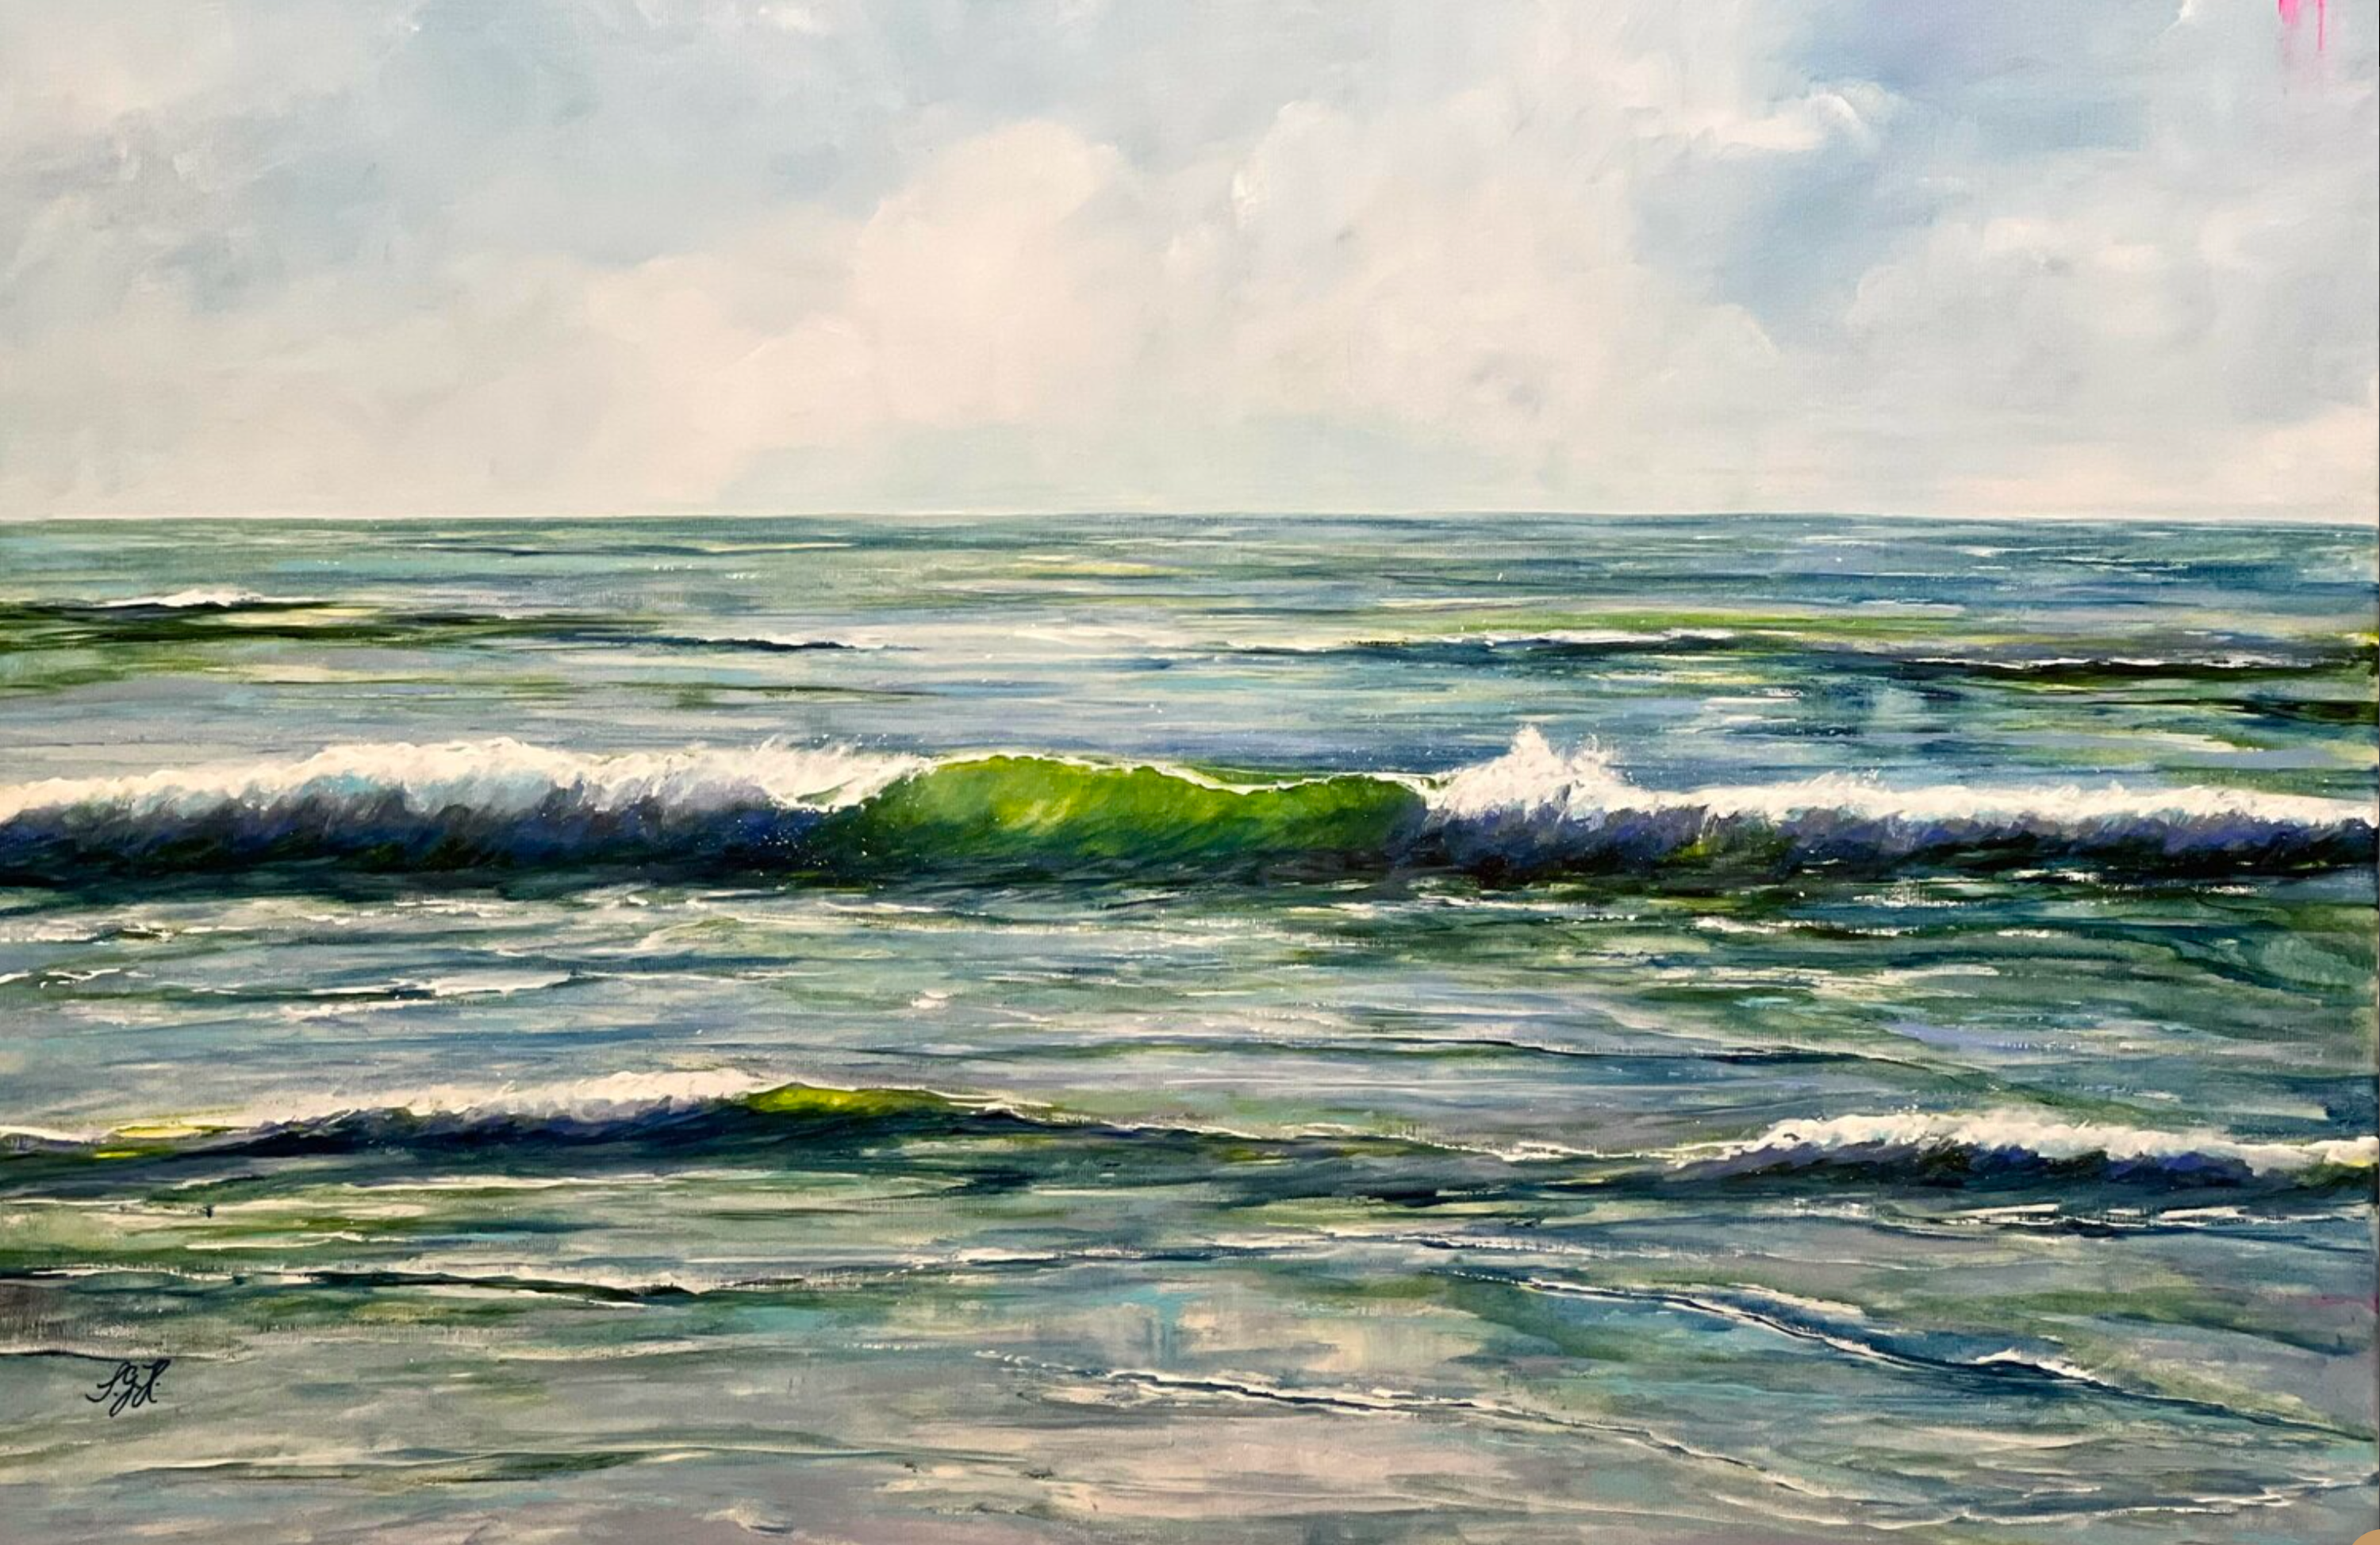 Sandra Gebhardt-Hoepfners "Green Wave 2" Gemälde. Die Sonne scheint hoch am Himmel und lässt die sich brechenden Wellen im herrlichen Meer durchscheinend grünlich schimmernd aussehen. Es ist ein wunderbarer Tag, mitten in der Natur. Glück. Die Farben sind hellgrün, dunkelgrün, dunkelblau, graublau, dunkelgrau und weiß.